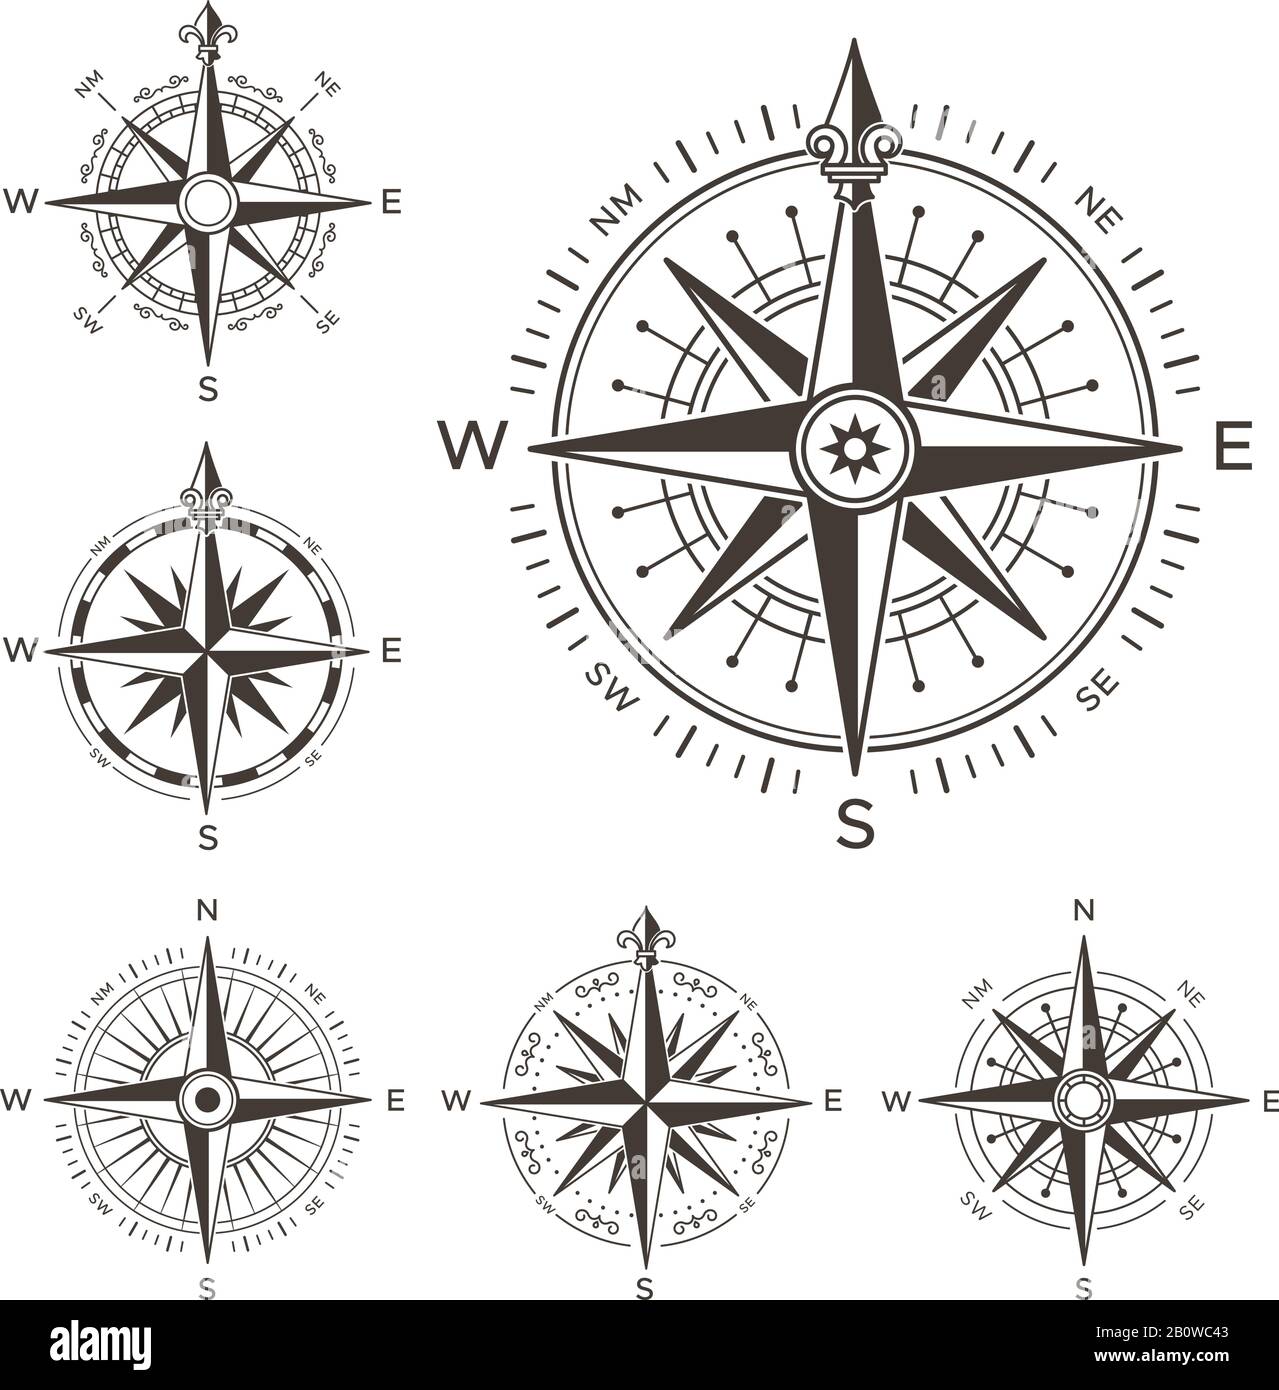 Compas nautique rétro. Rose vintage du vent pour la carte du monde de la mer. Les flèches ouest et est ou sud et nord symbolisent un ensemble de vecteurs isolés Illustration de Vecteur